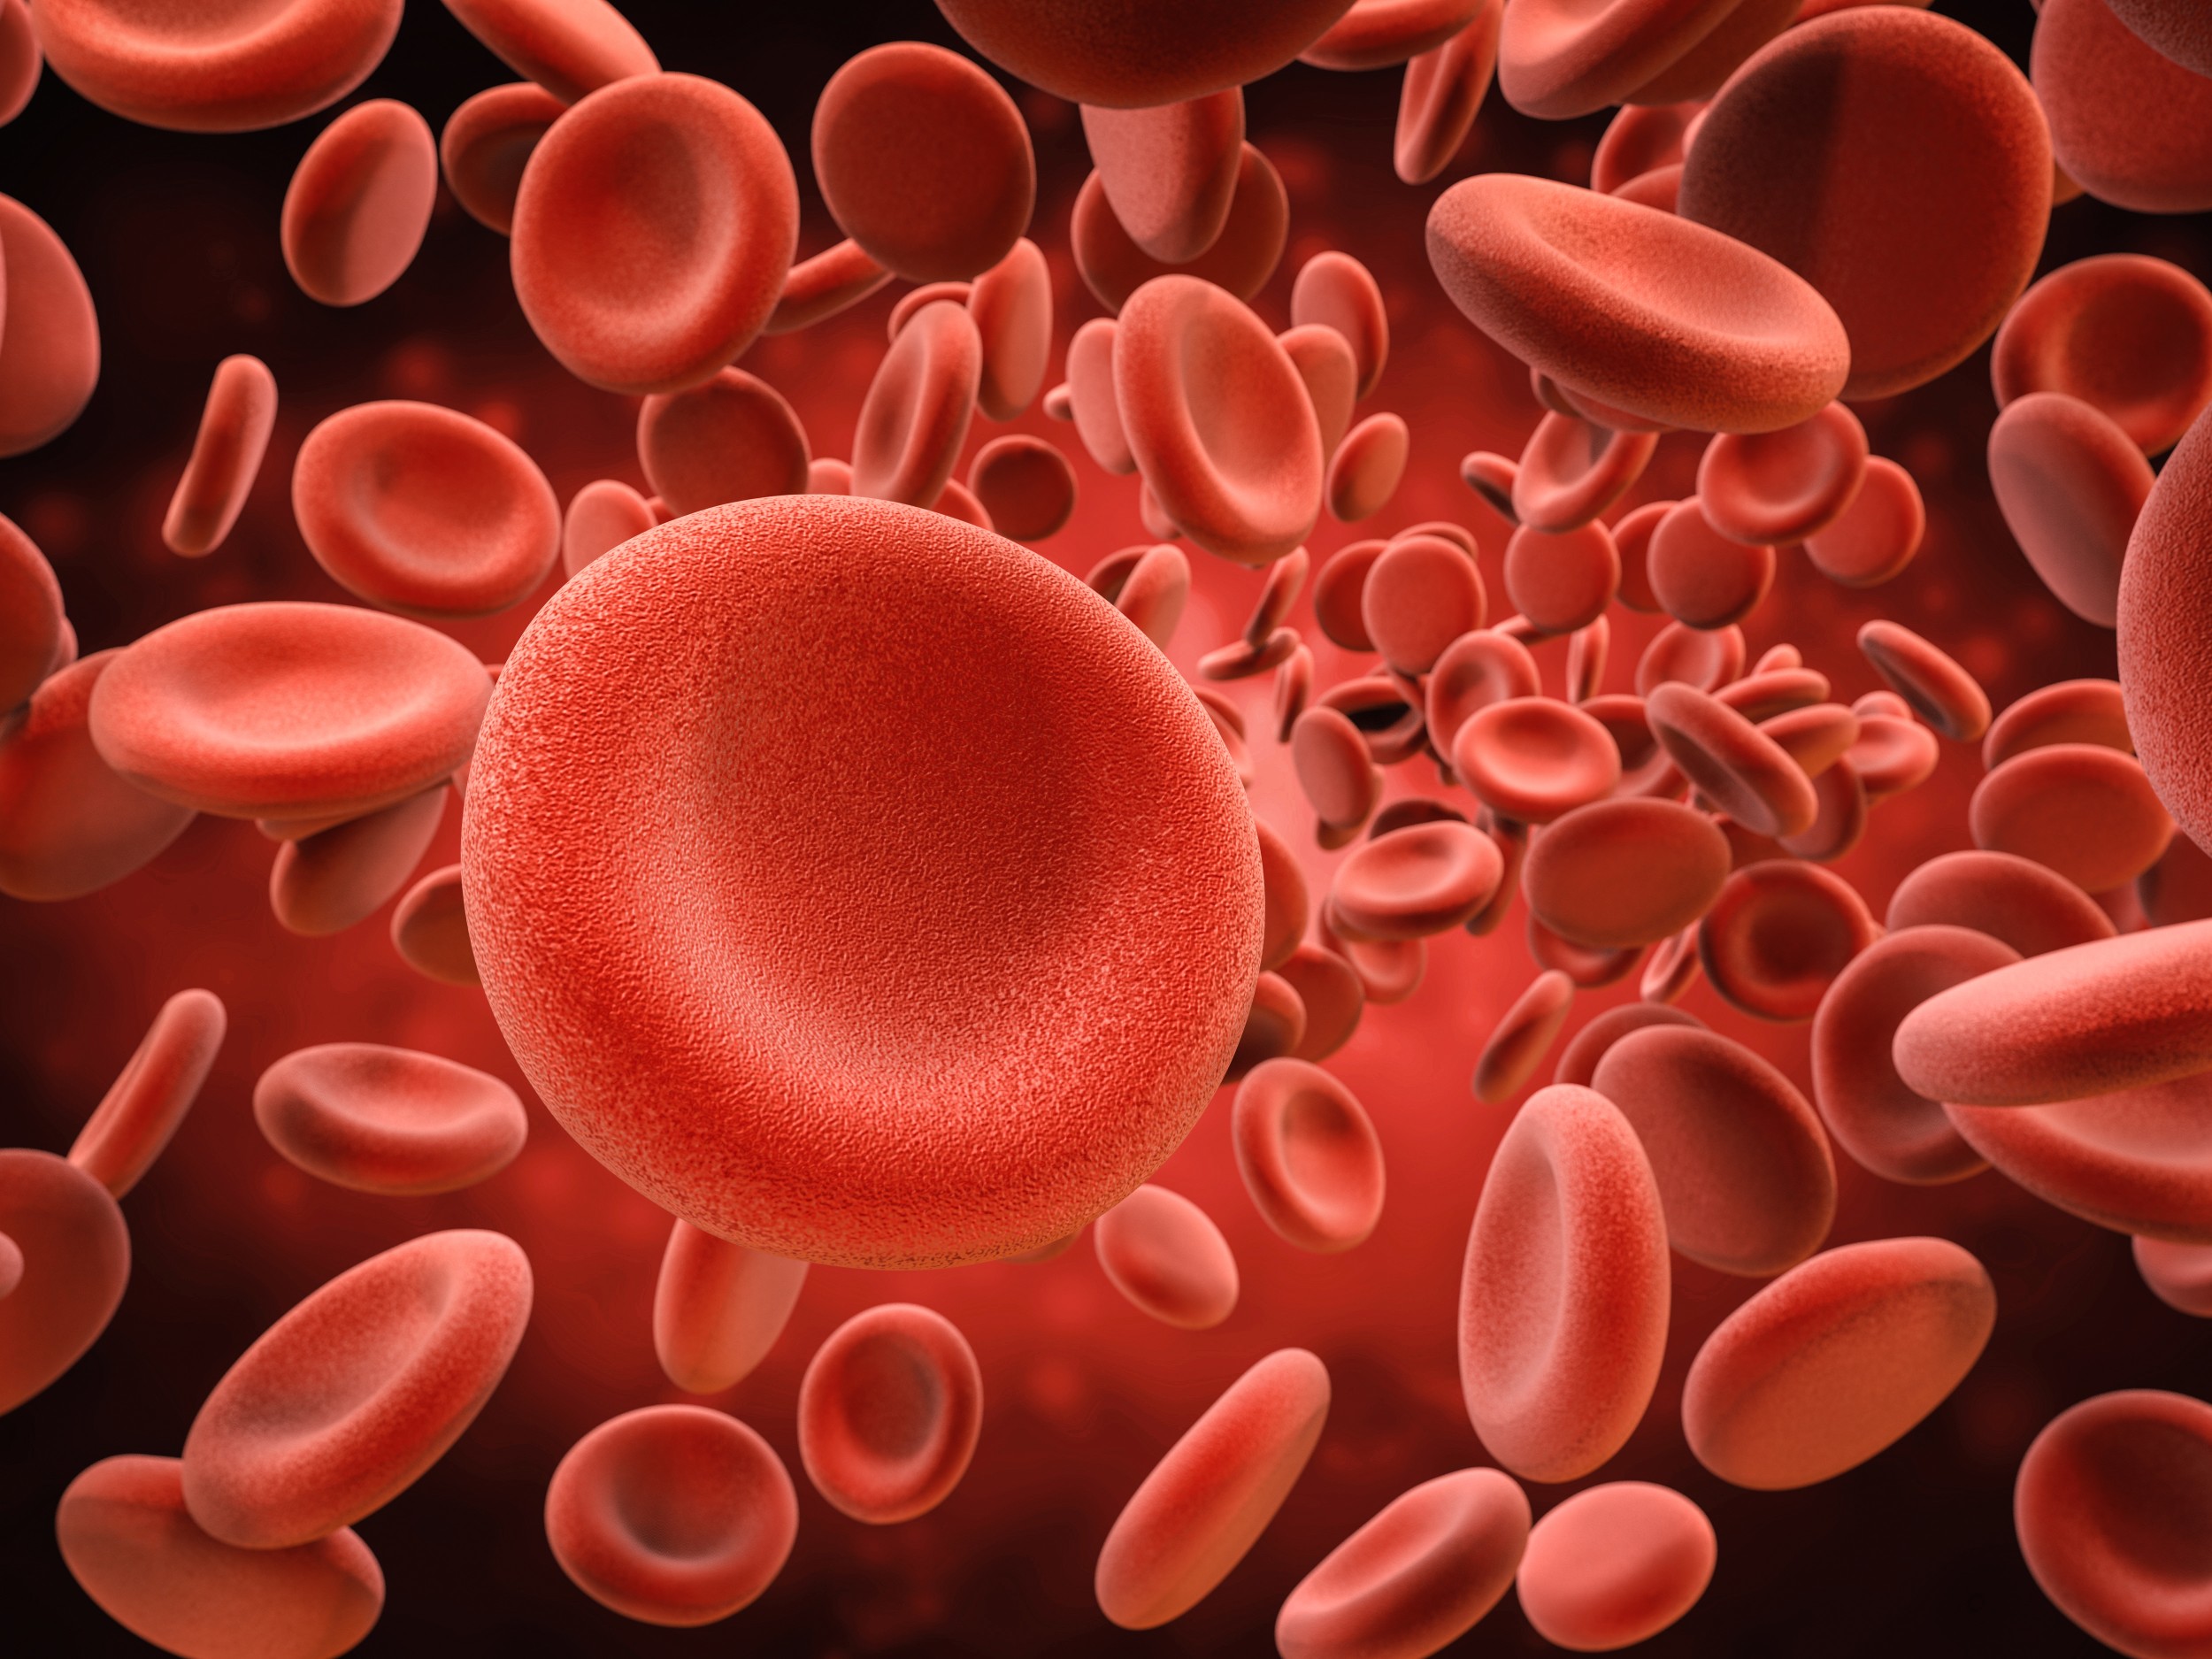 Hemácias - Eritrócitos ou Glóbulos Vermelhos - Sangue - InfoEscola